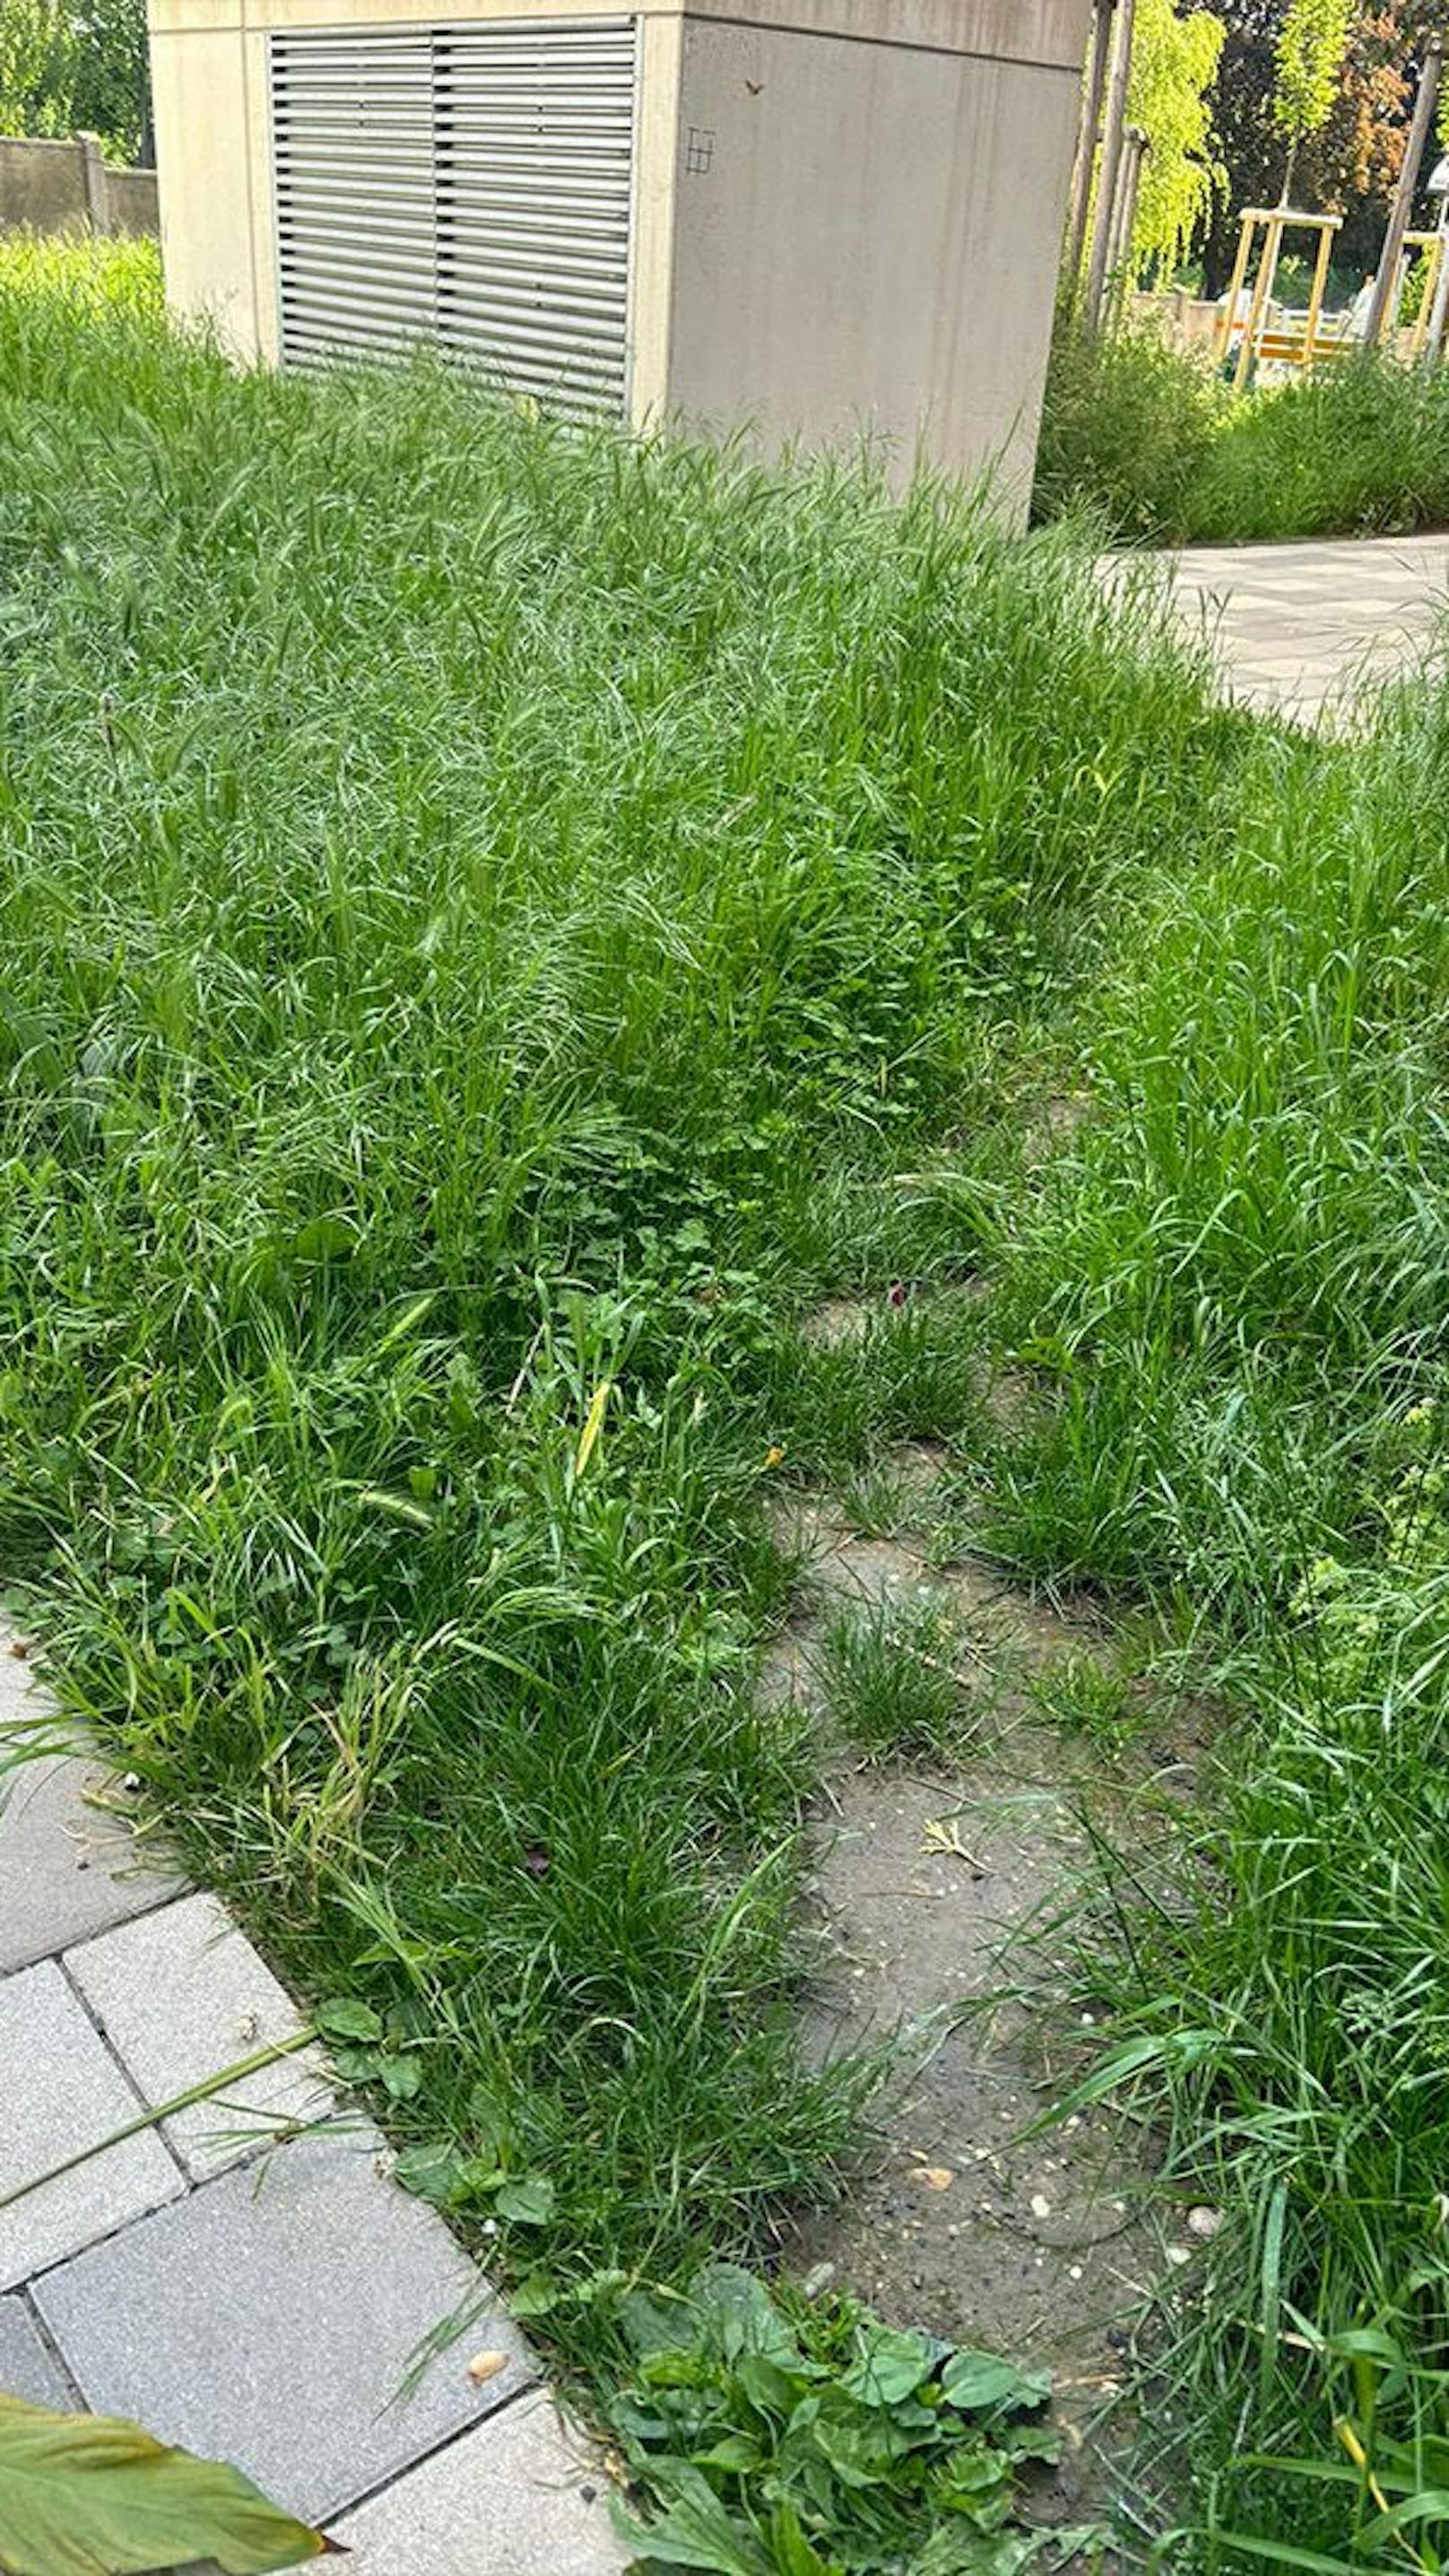 "Gras bis zum Bauch" – Hausverwaltung mäht Rasen nicht